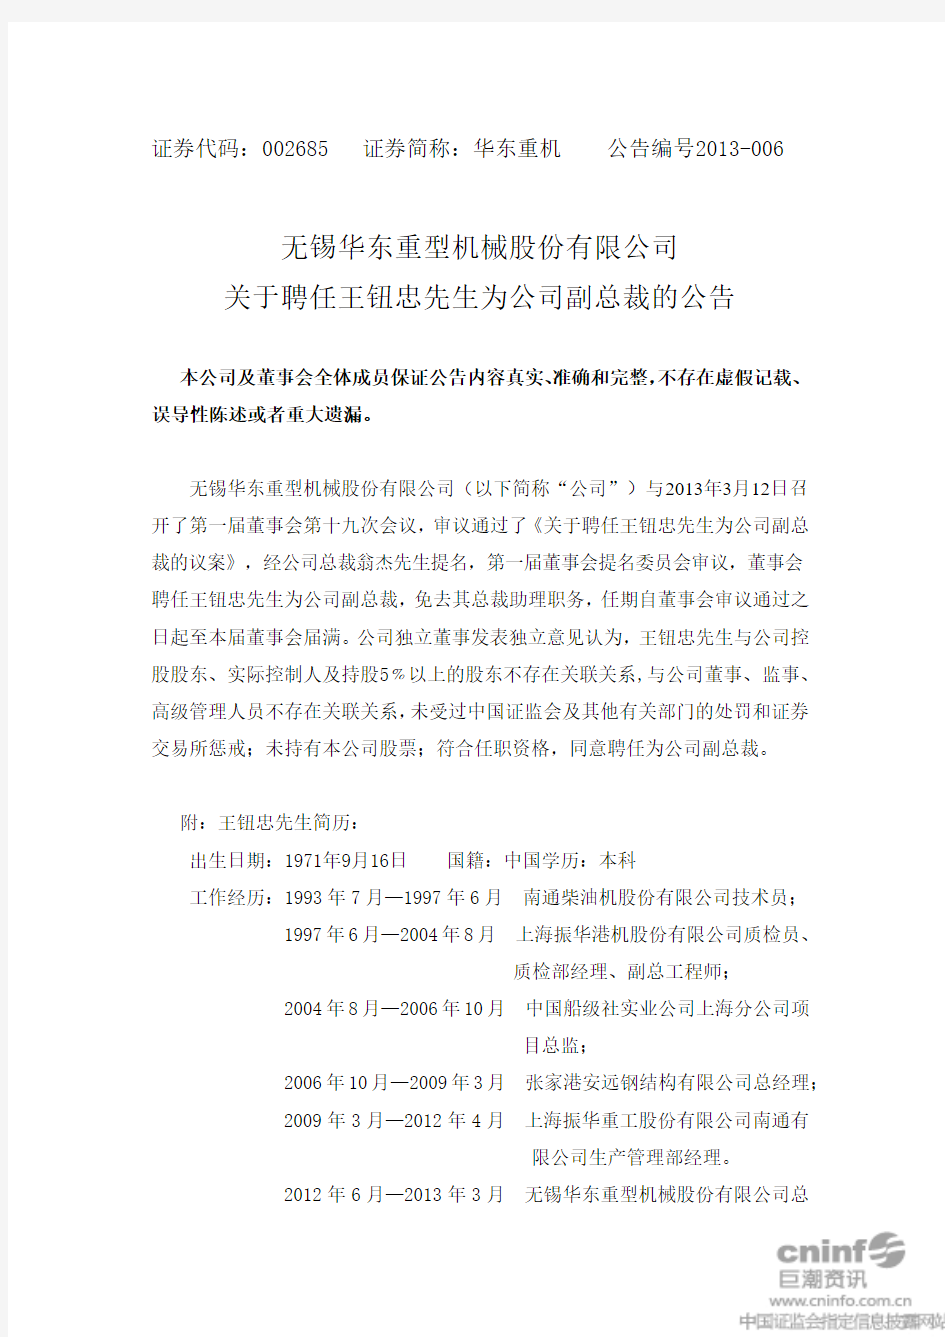 无锡华东重型机械股份有限公司 关于聘任王钮忠先生为公司副